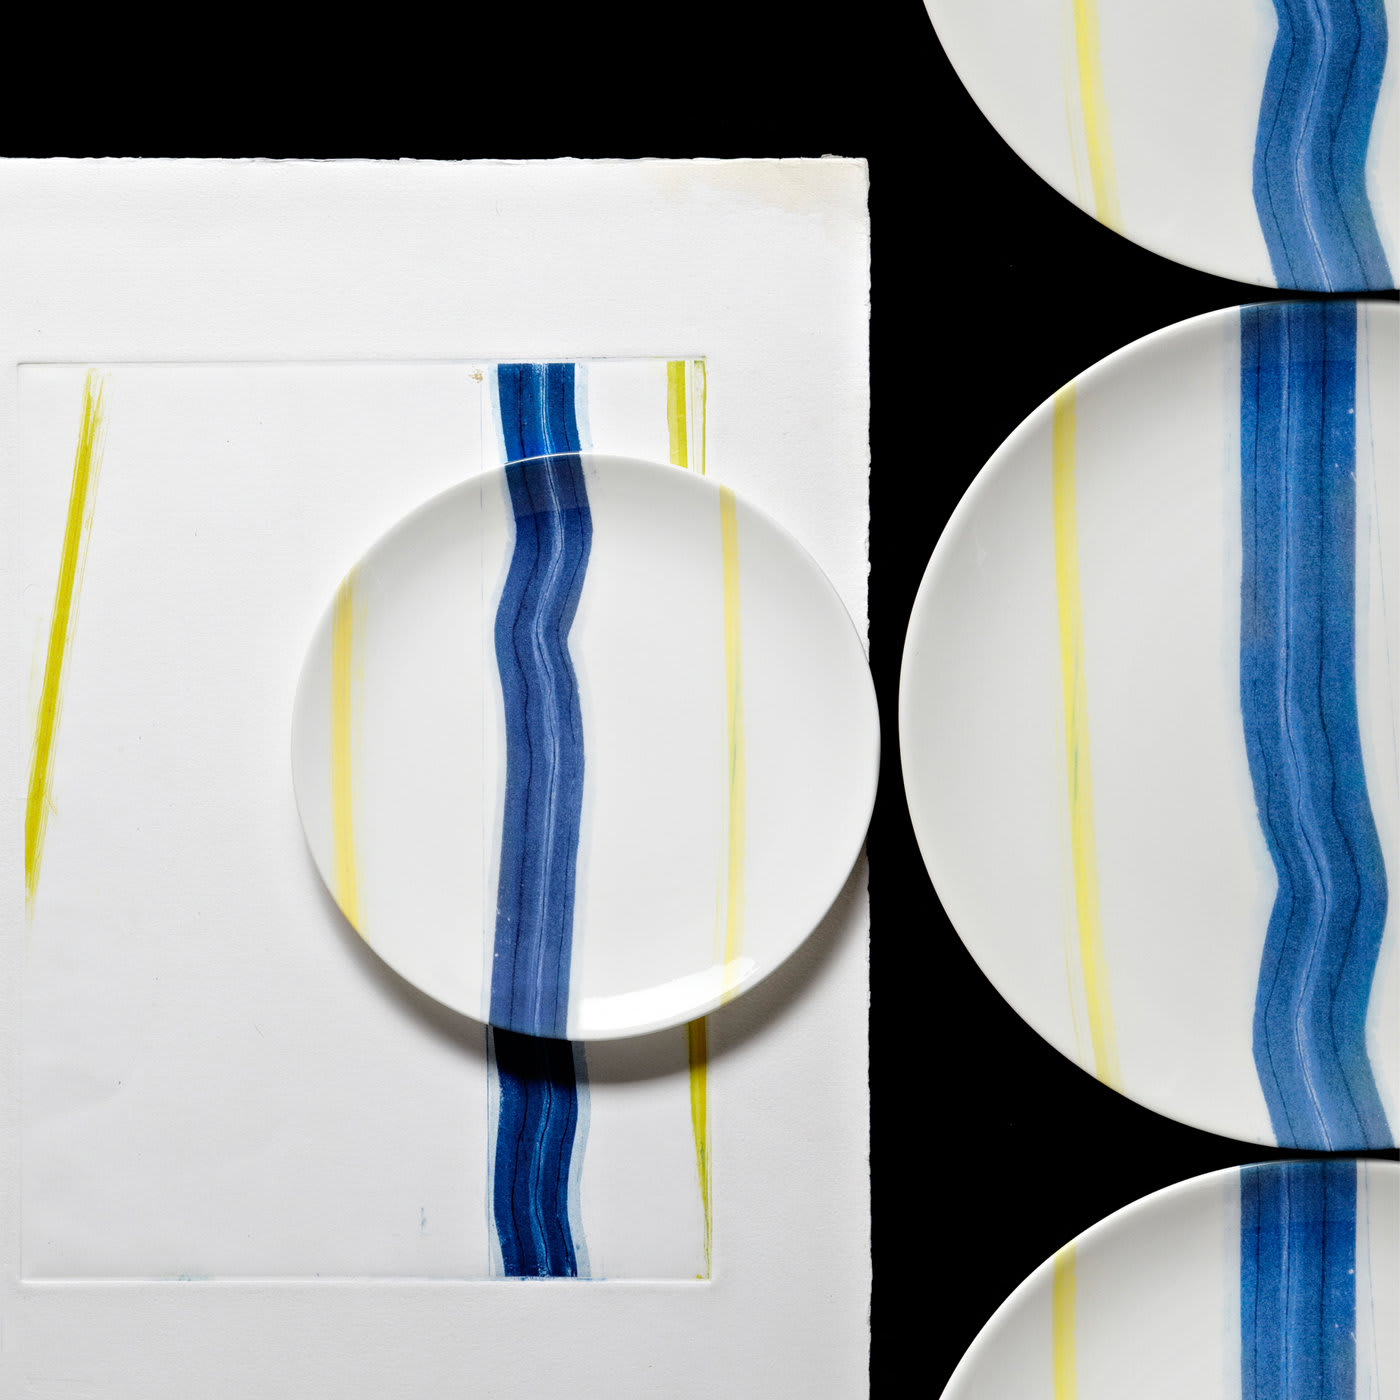 Orizzonti White Dinner Plates Set of 4 by Vittore Frattini - Laboratorio Paravicini